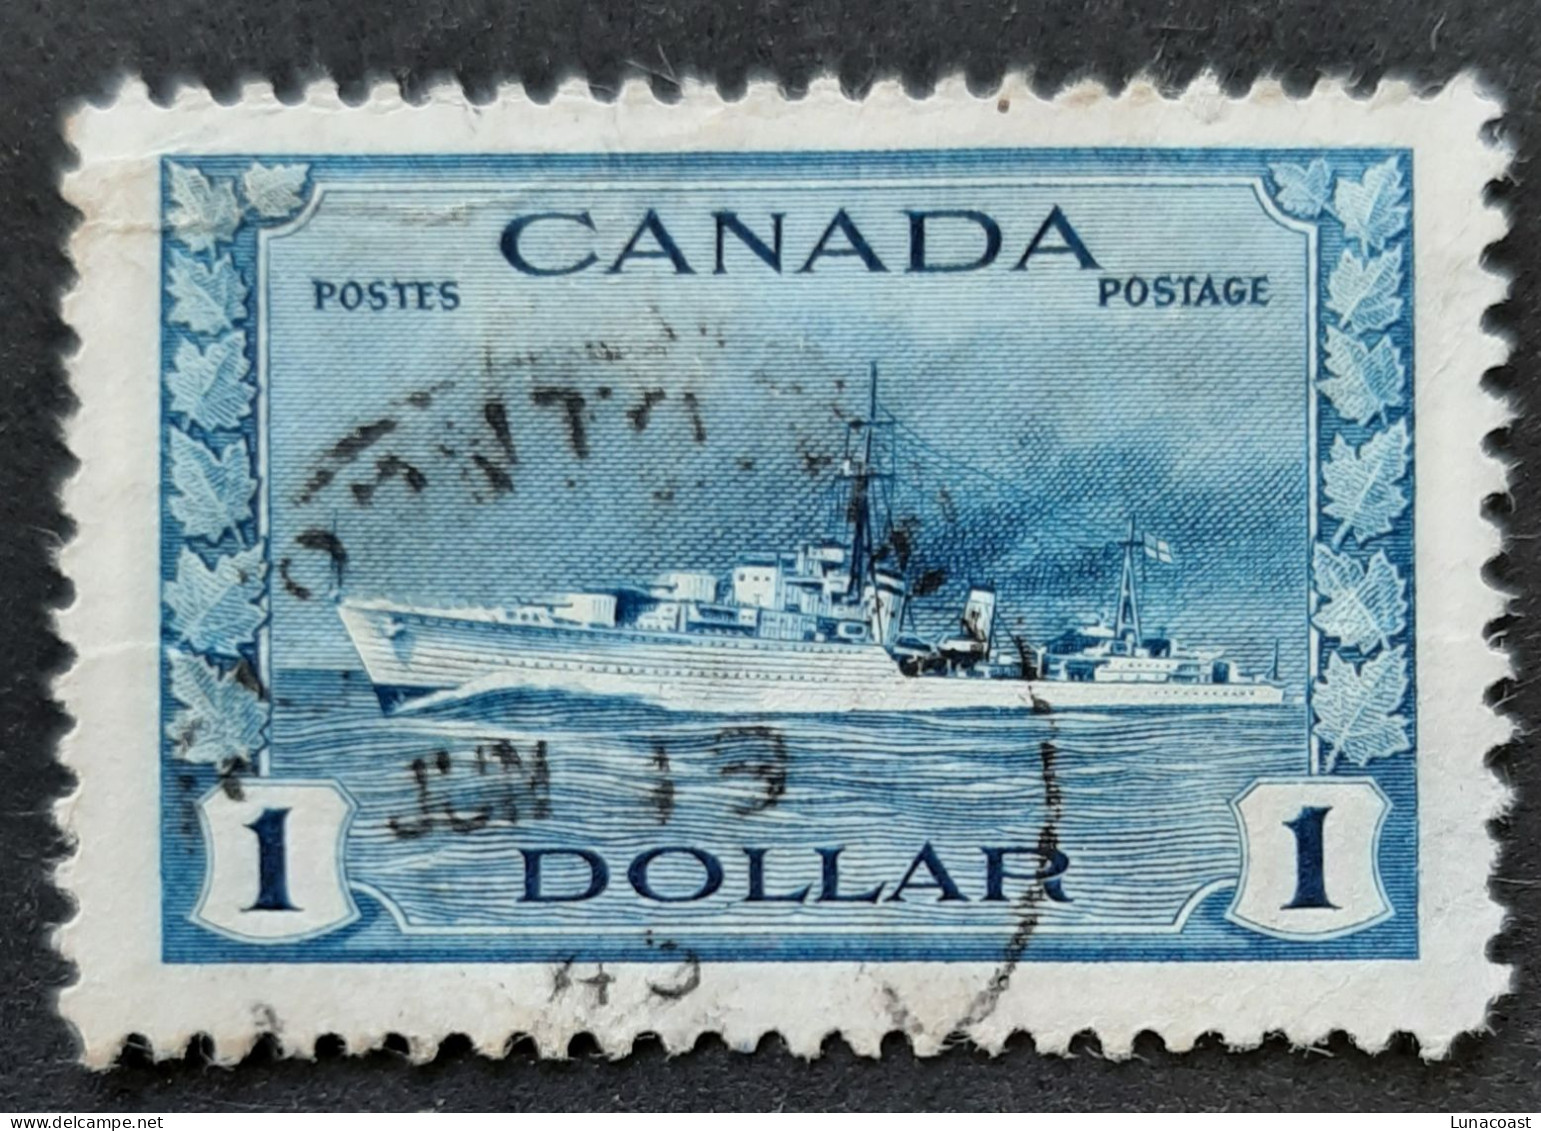 Canada 1942  USED  Sc 262,    1$ War Issue, Destroyer - Gebruikt